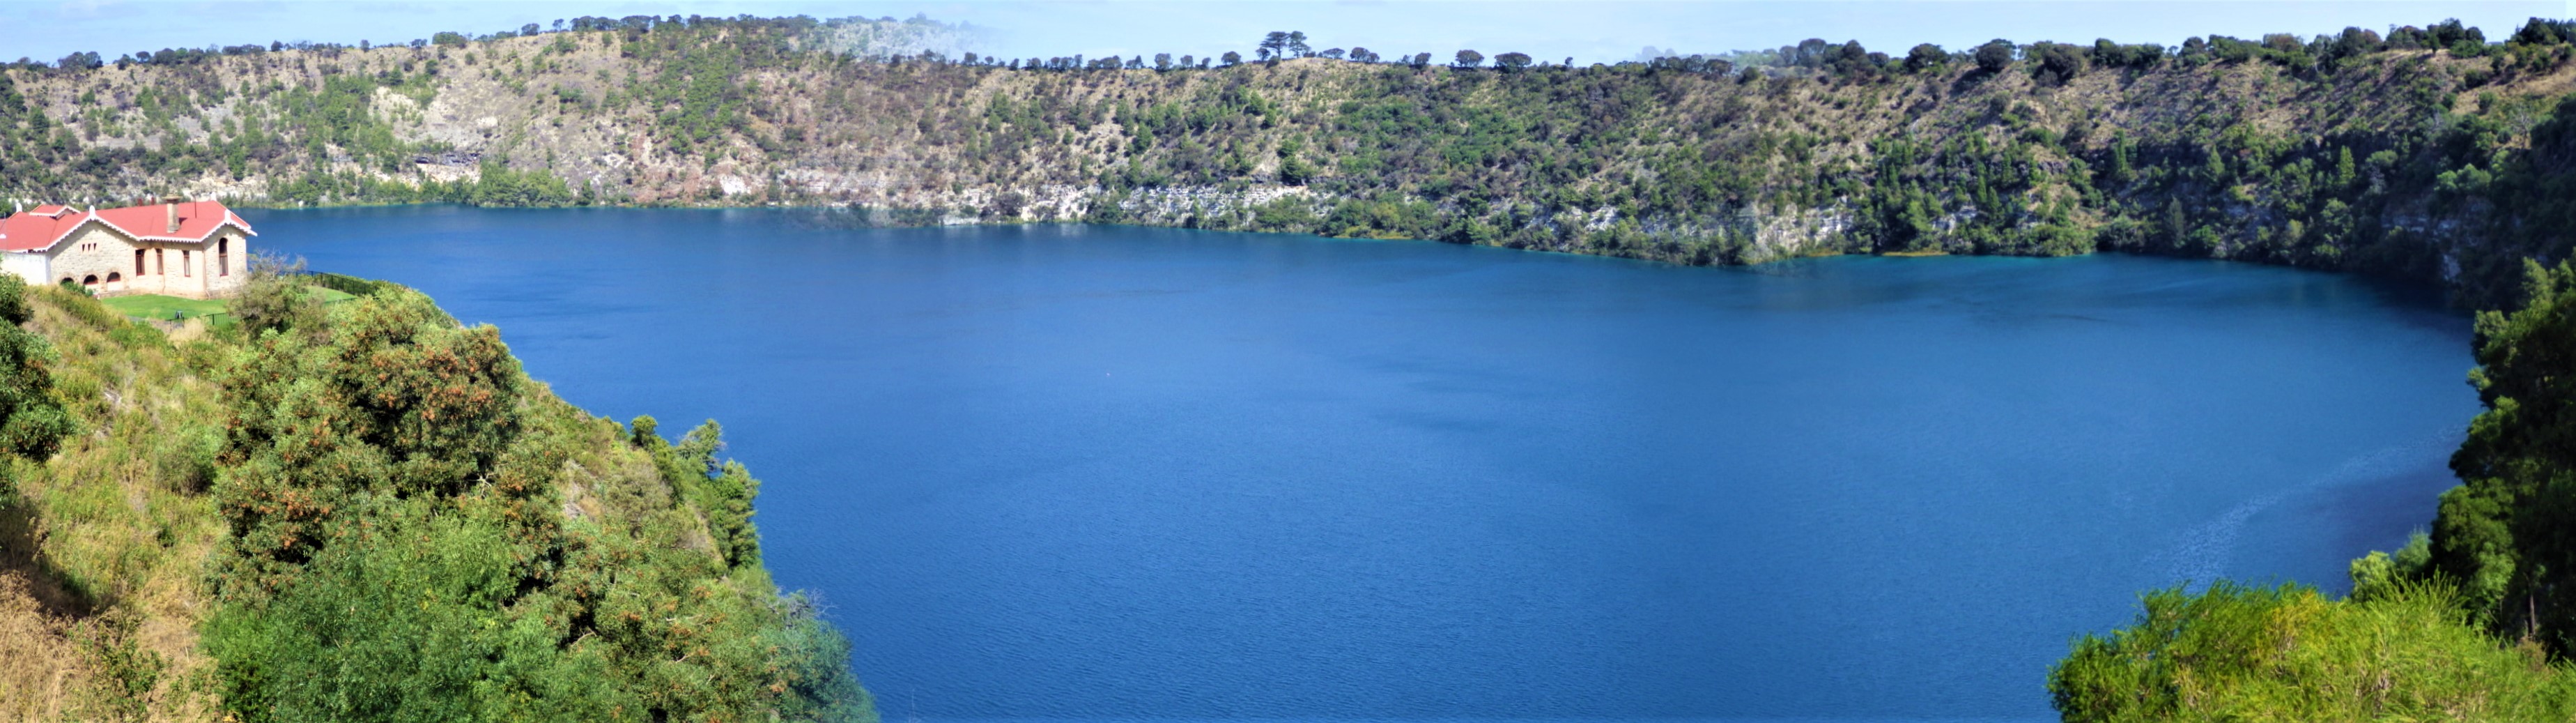 blue lake2.jpg